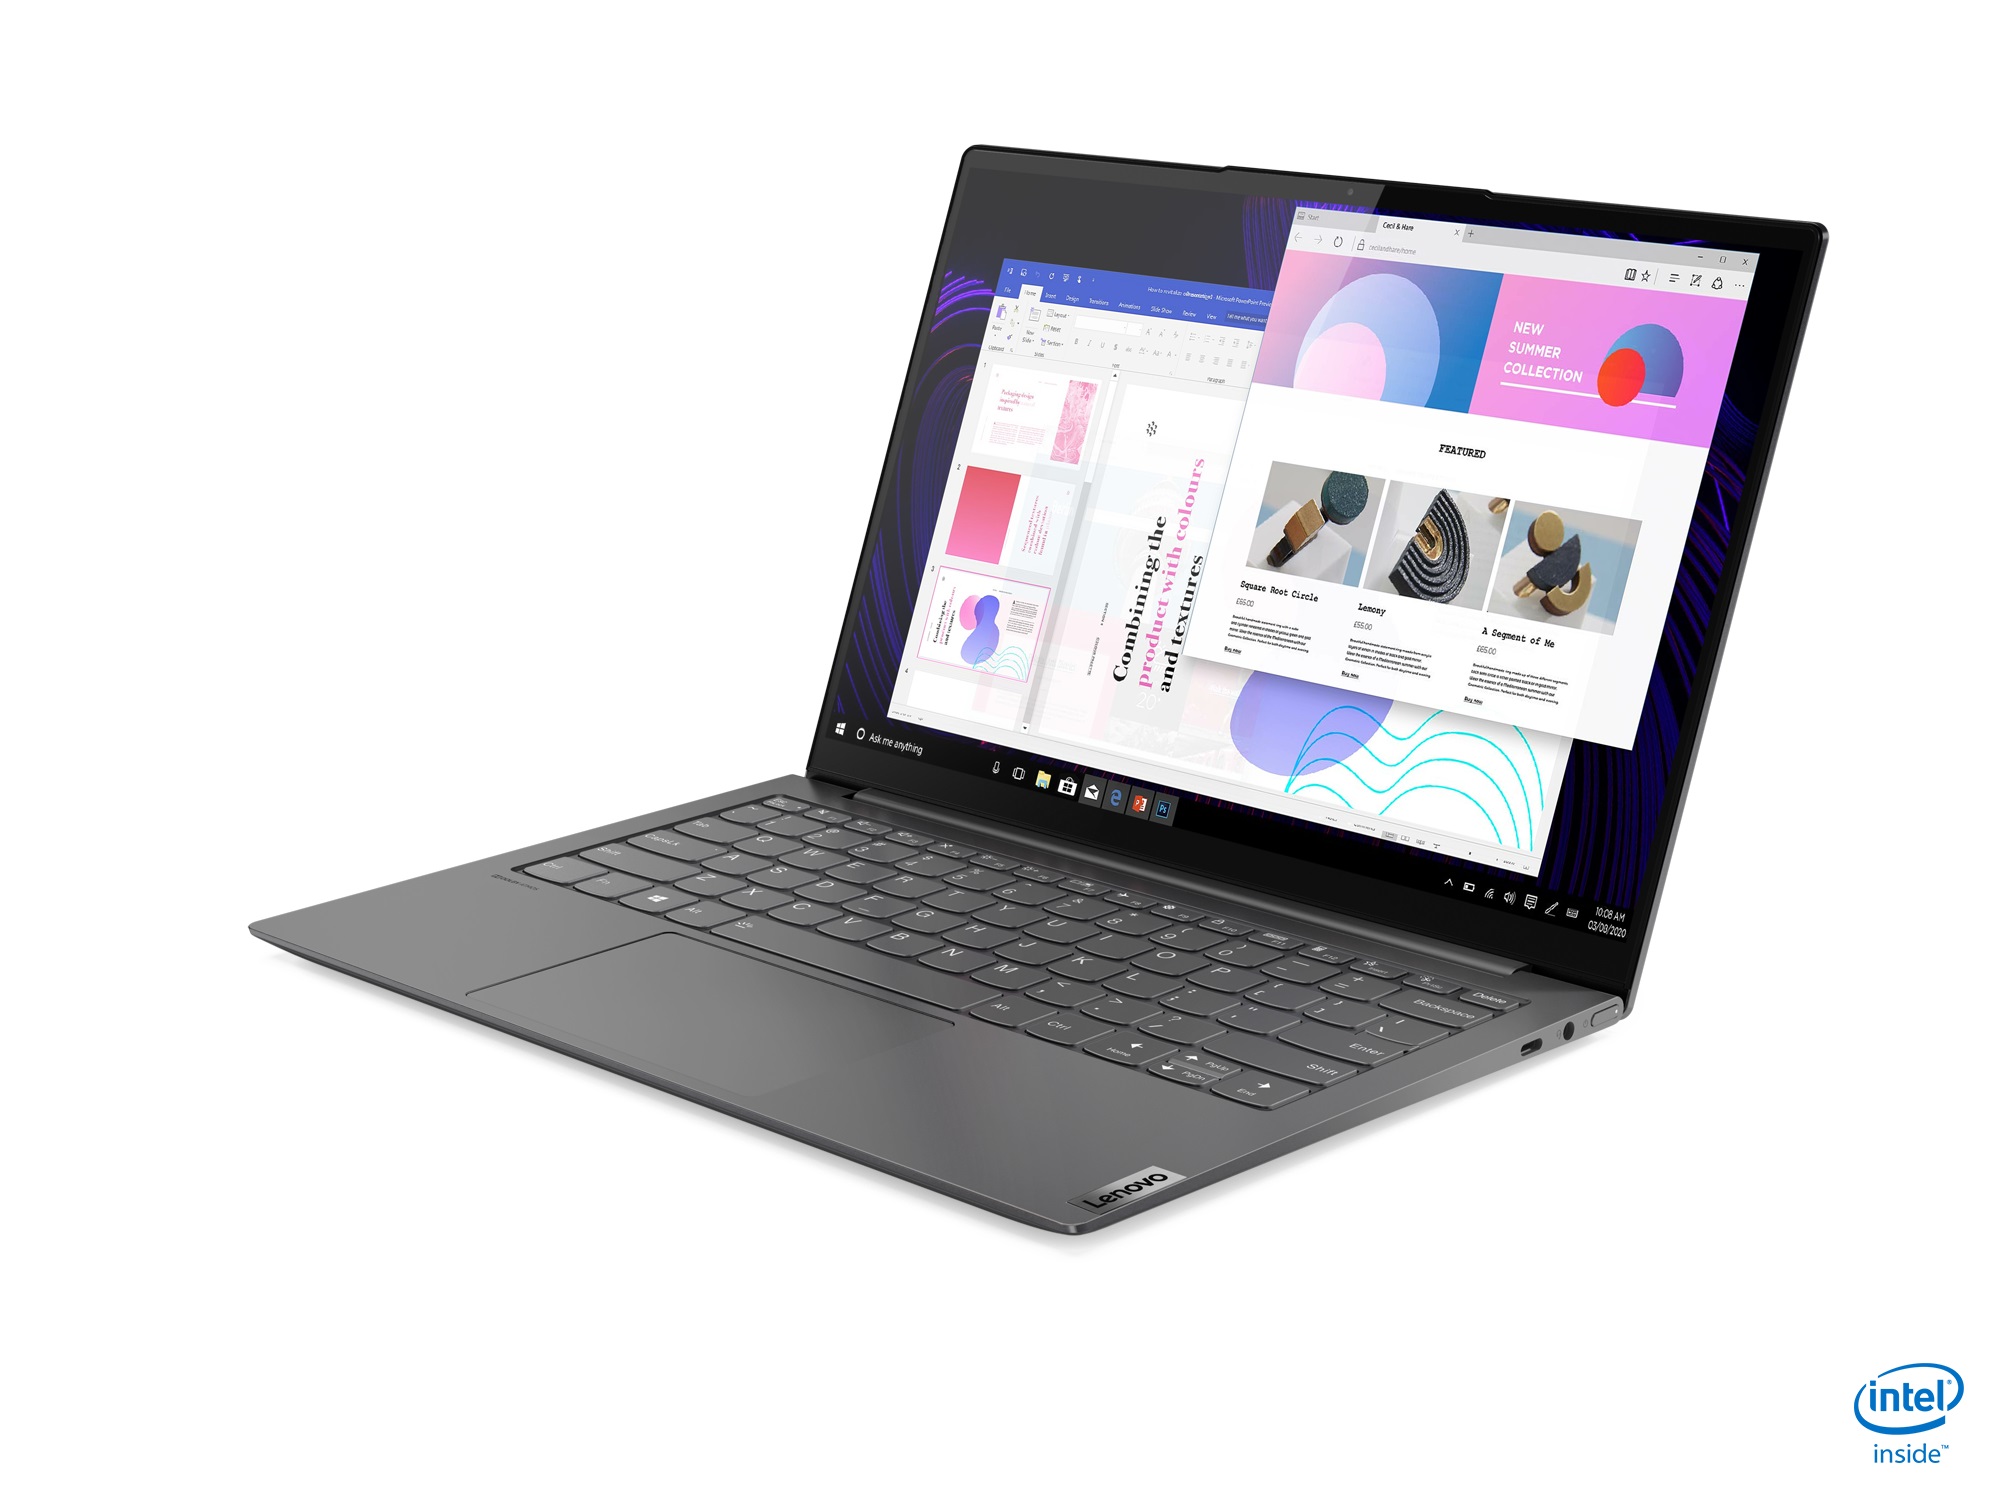 Lenovo introduces new Yoga consumer laptops running Windows 10 3e1e5a986ecd3a834650bb6d55f8e9a5.jpg